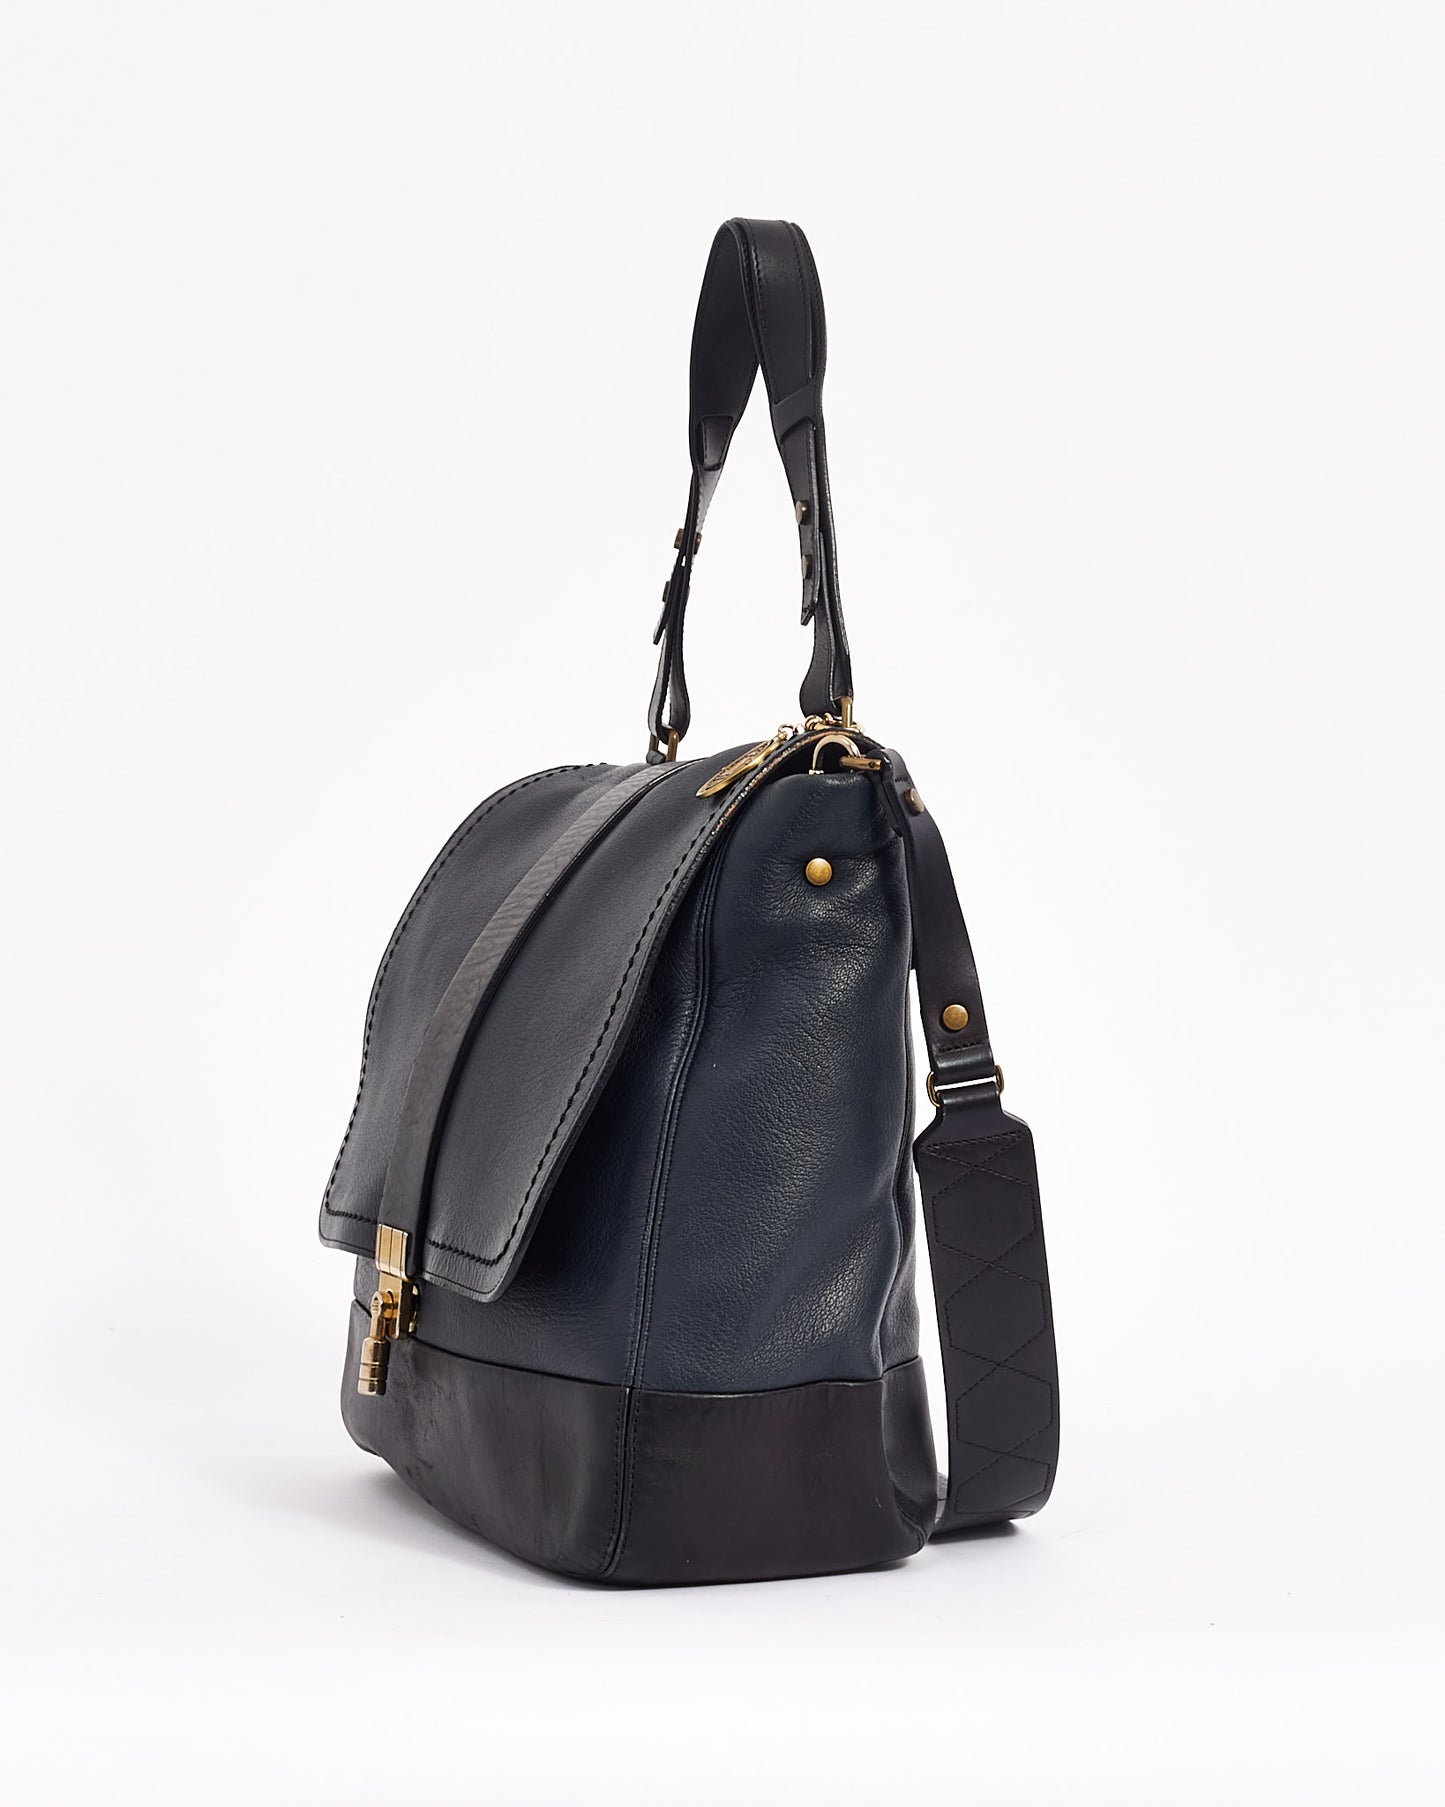 Lanvin Black Leather Shoulder Happy Bag